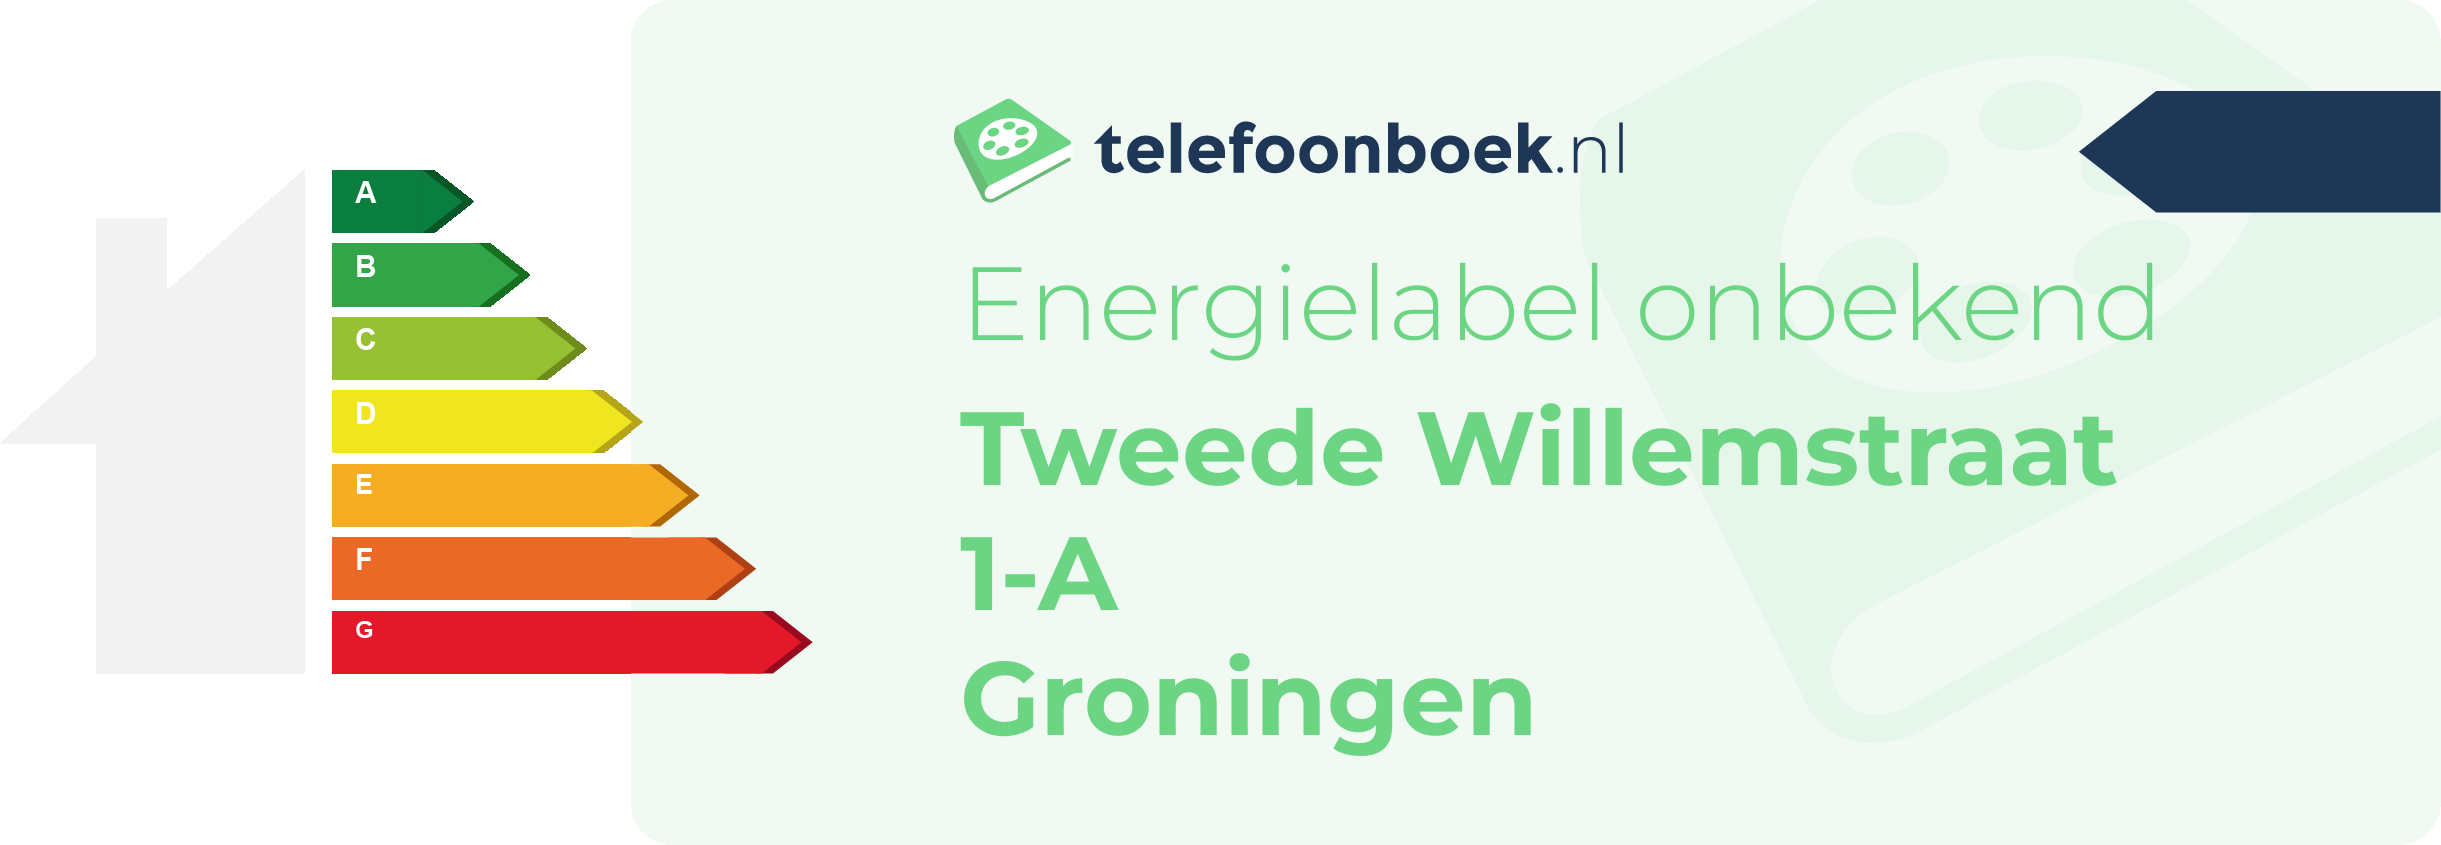 Energielabel Tweede Willemstraat 1-A Groningen